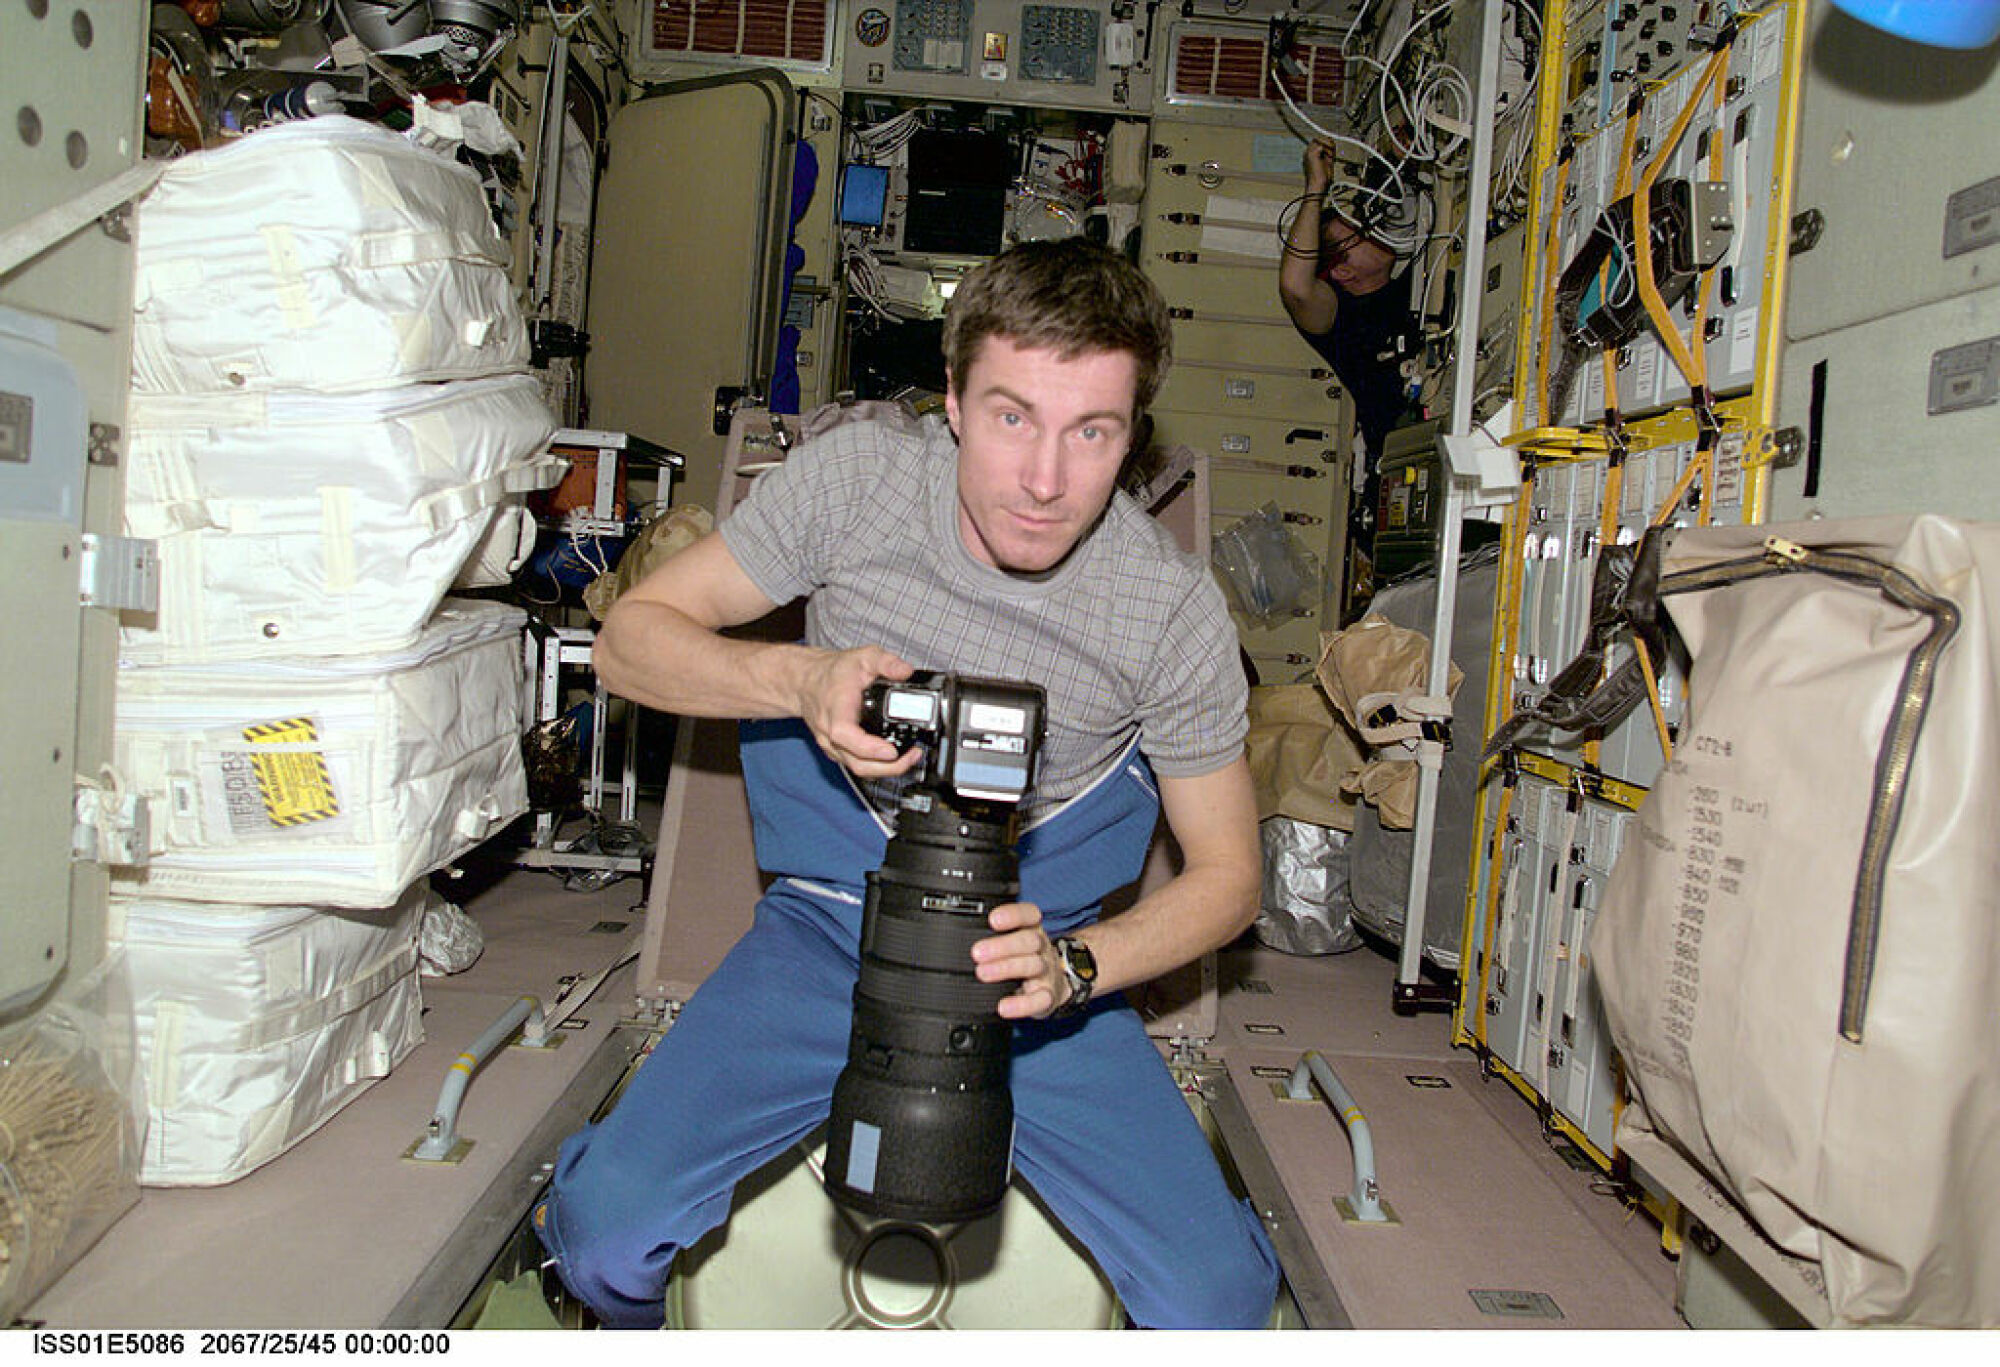 Le cosmonaute Sergei Krikalev travaillant dans l'espace